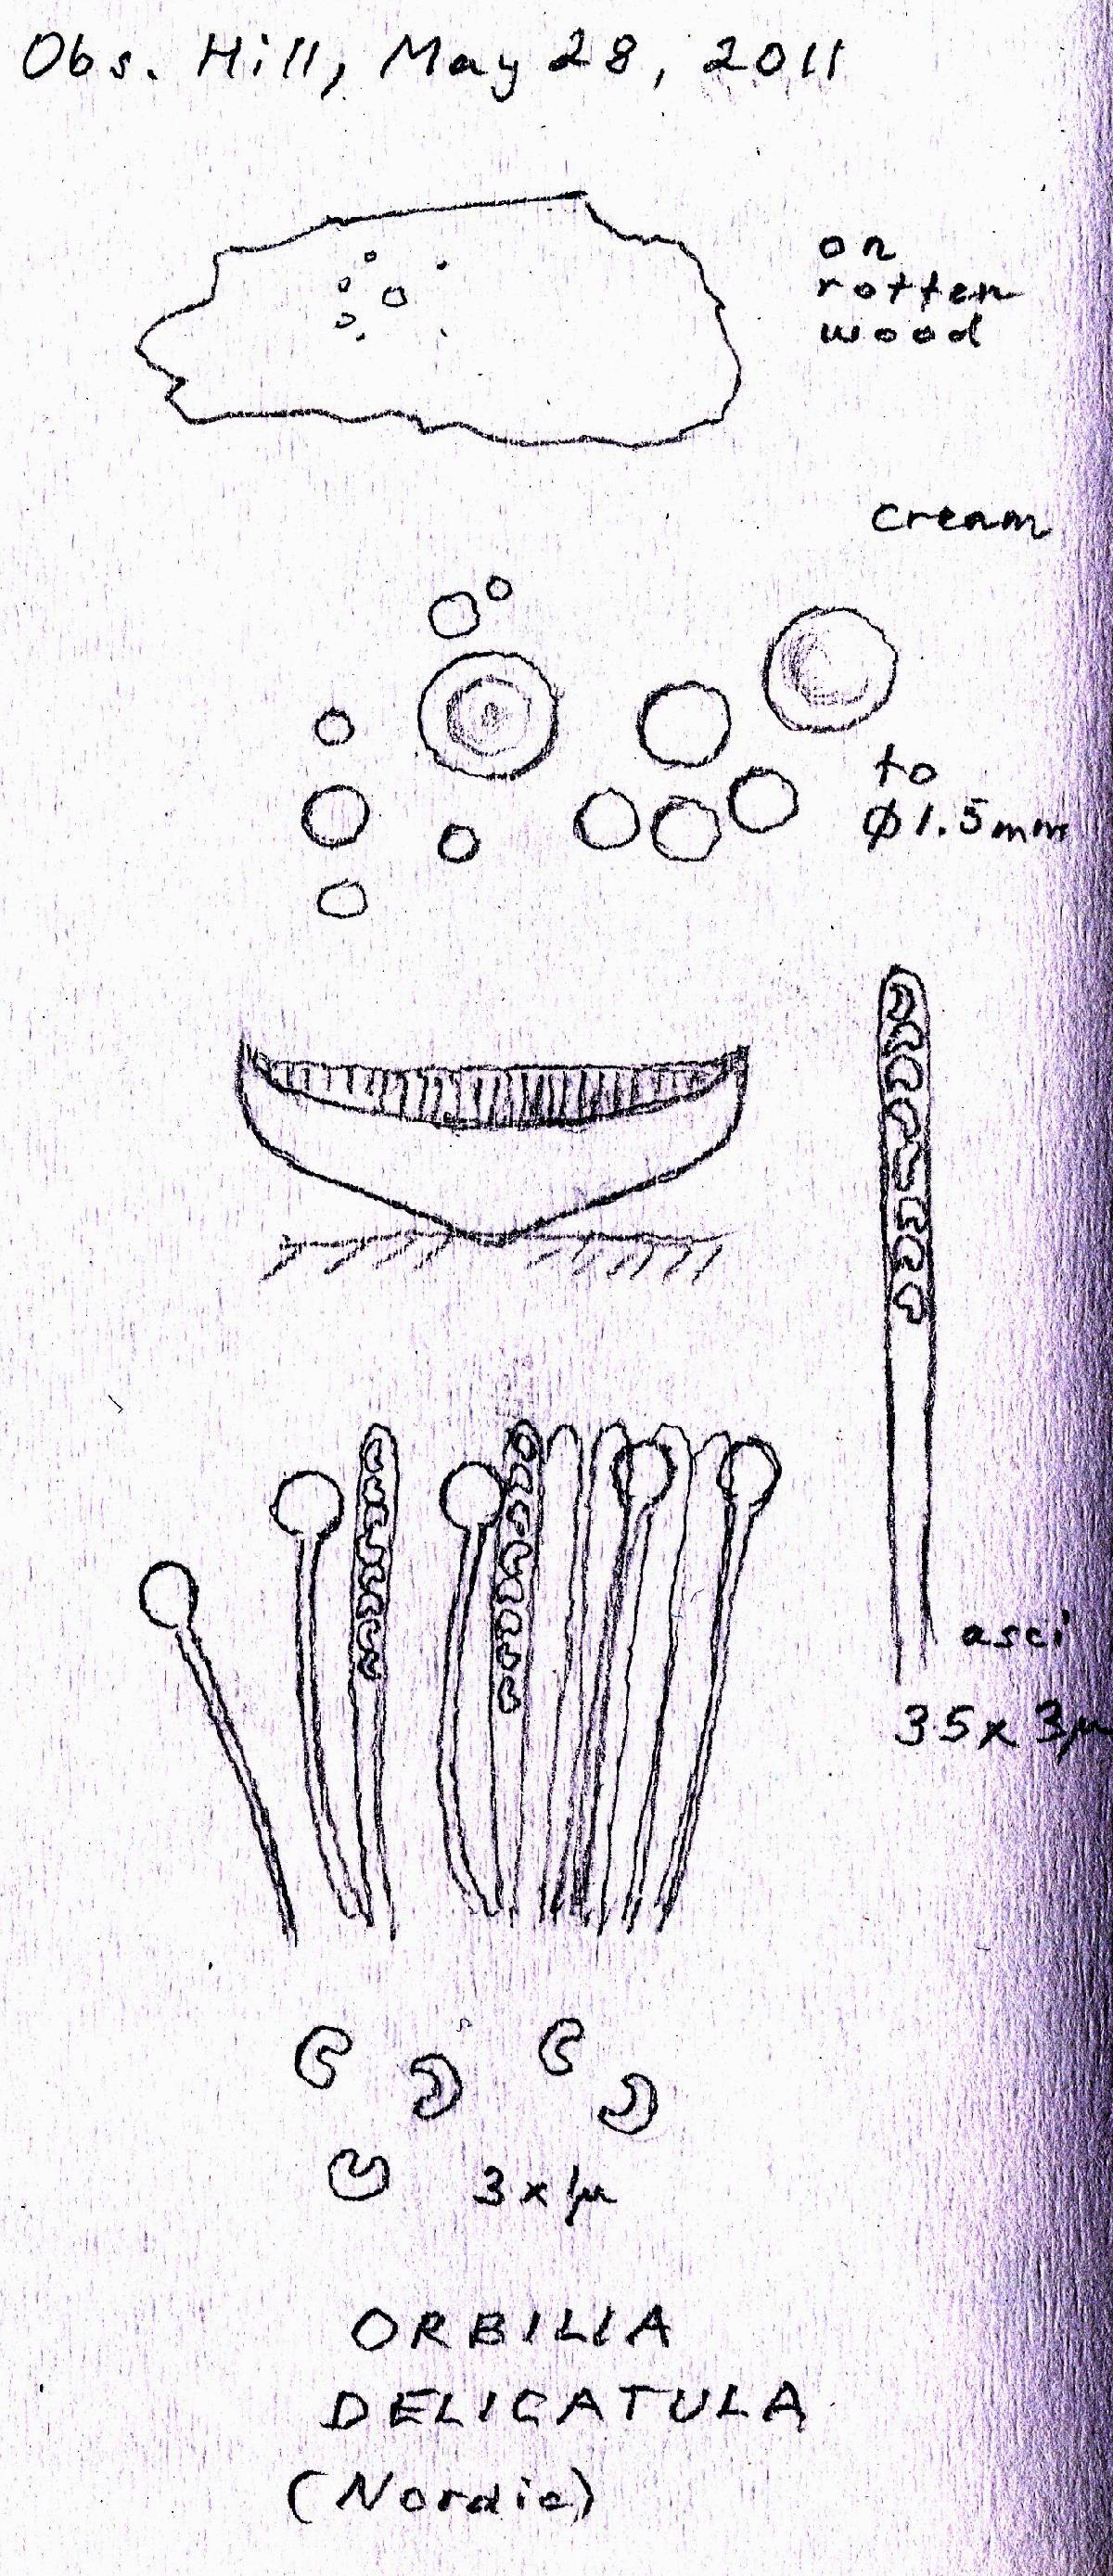 Orbilia delicatula image